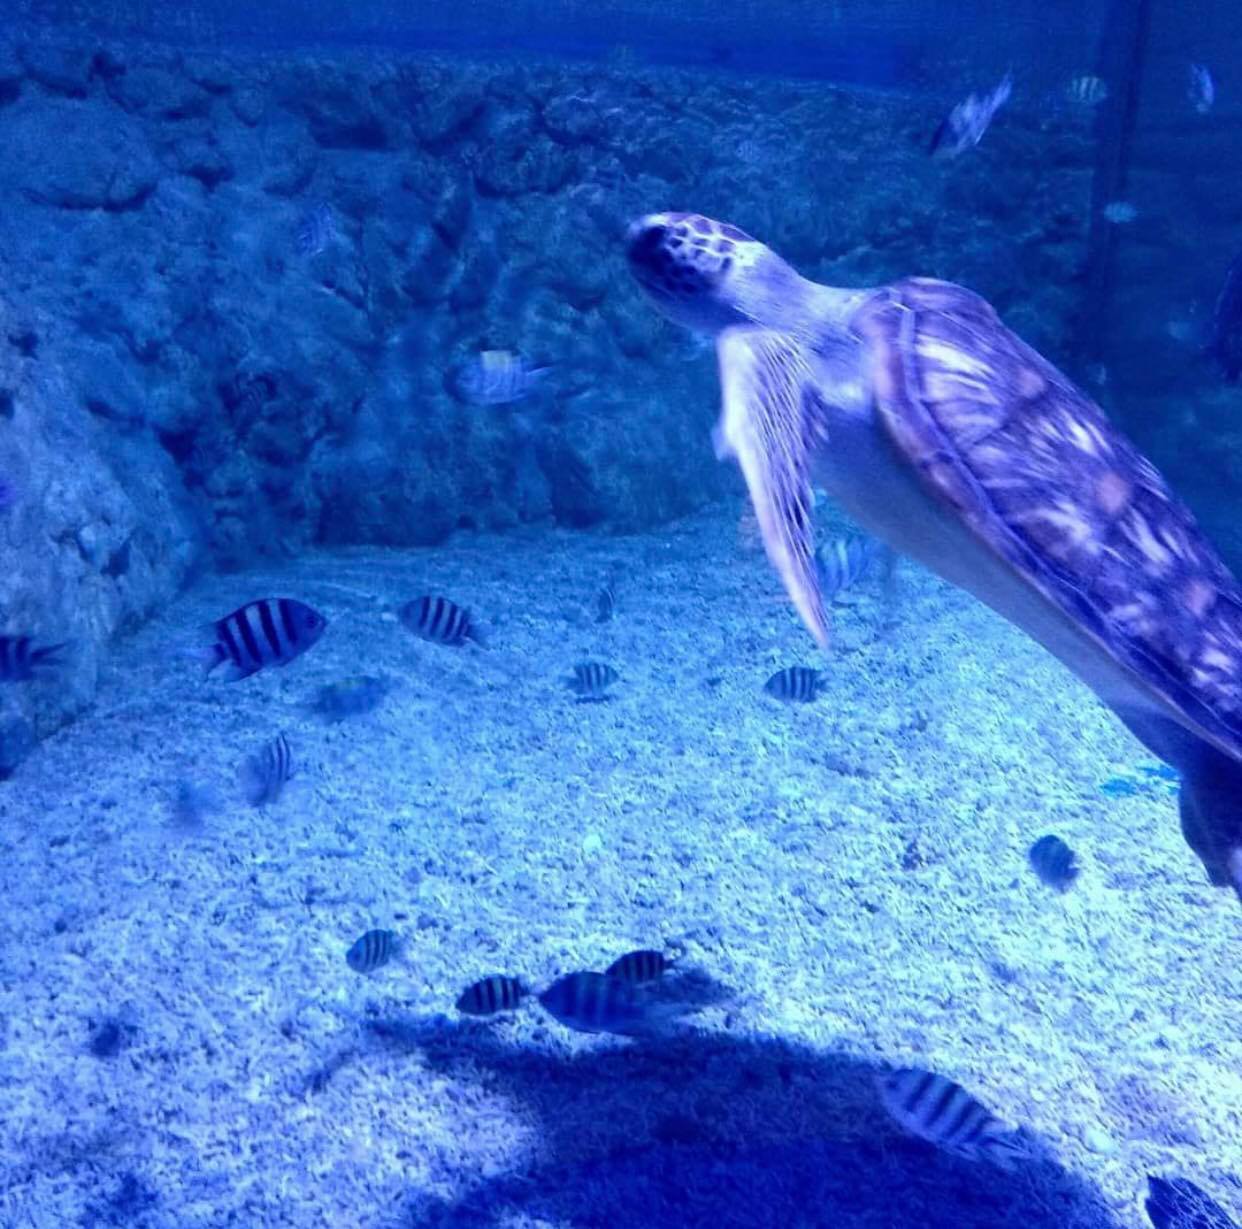 Grand Aquarium din Hurghada